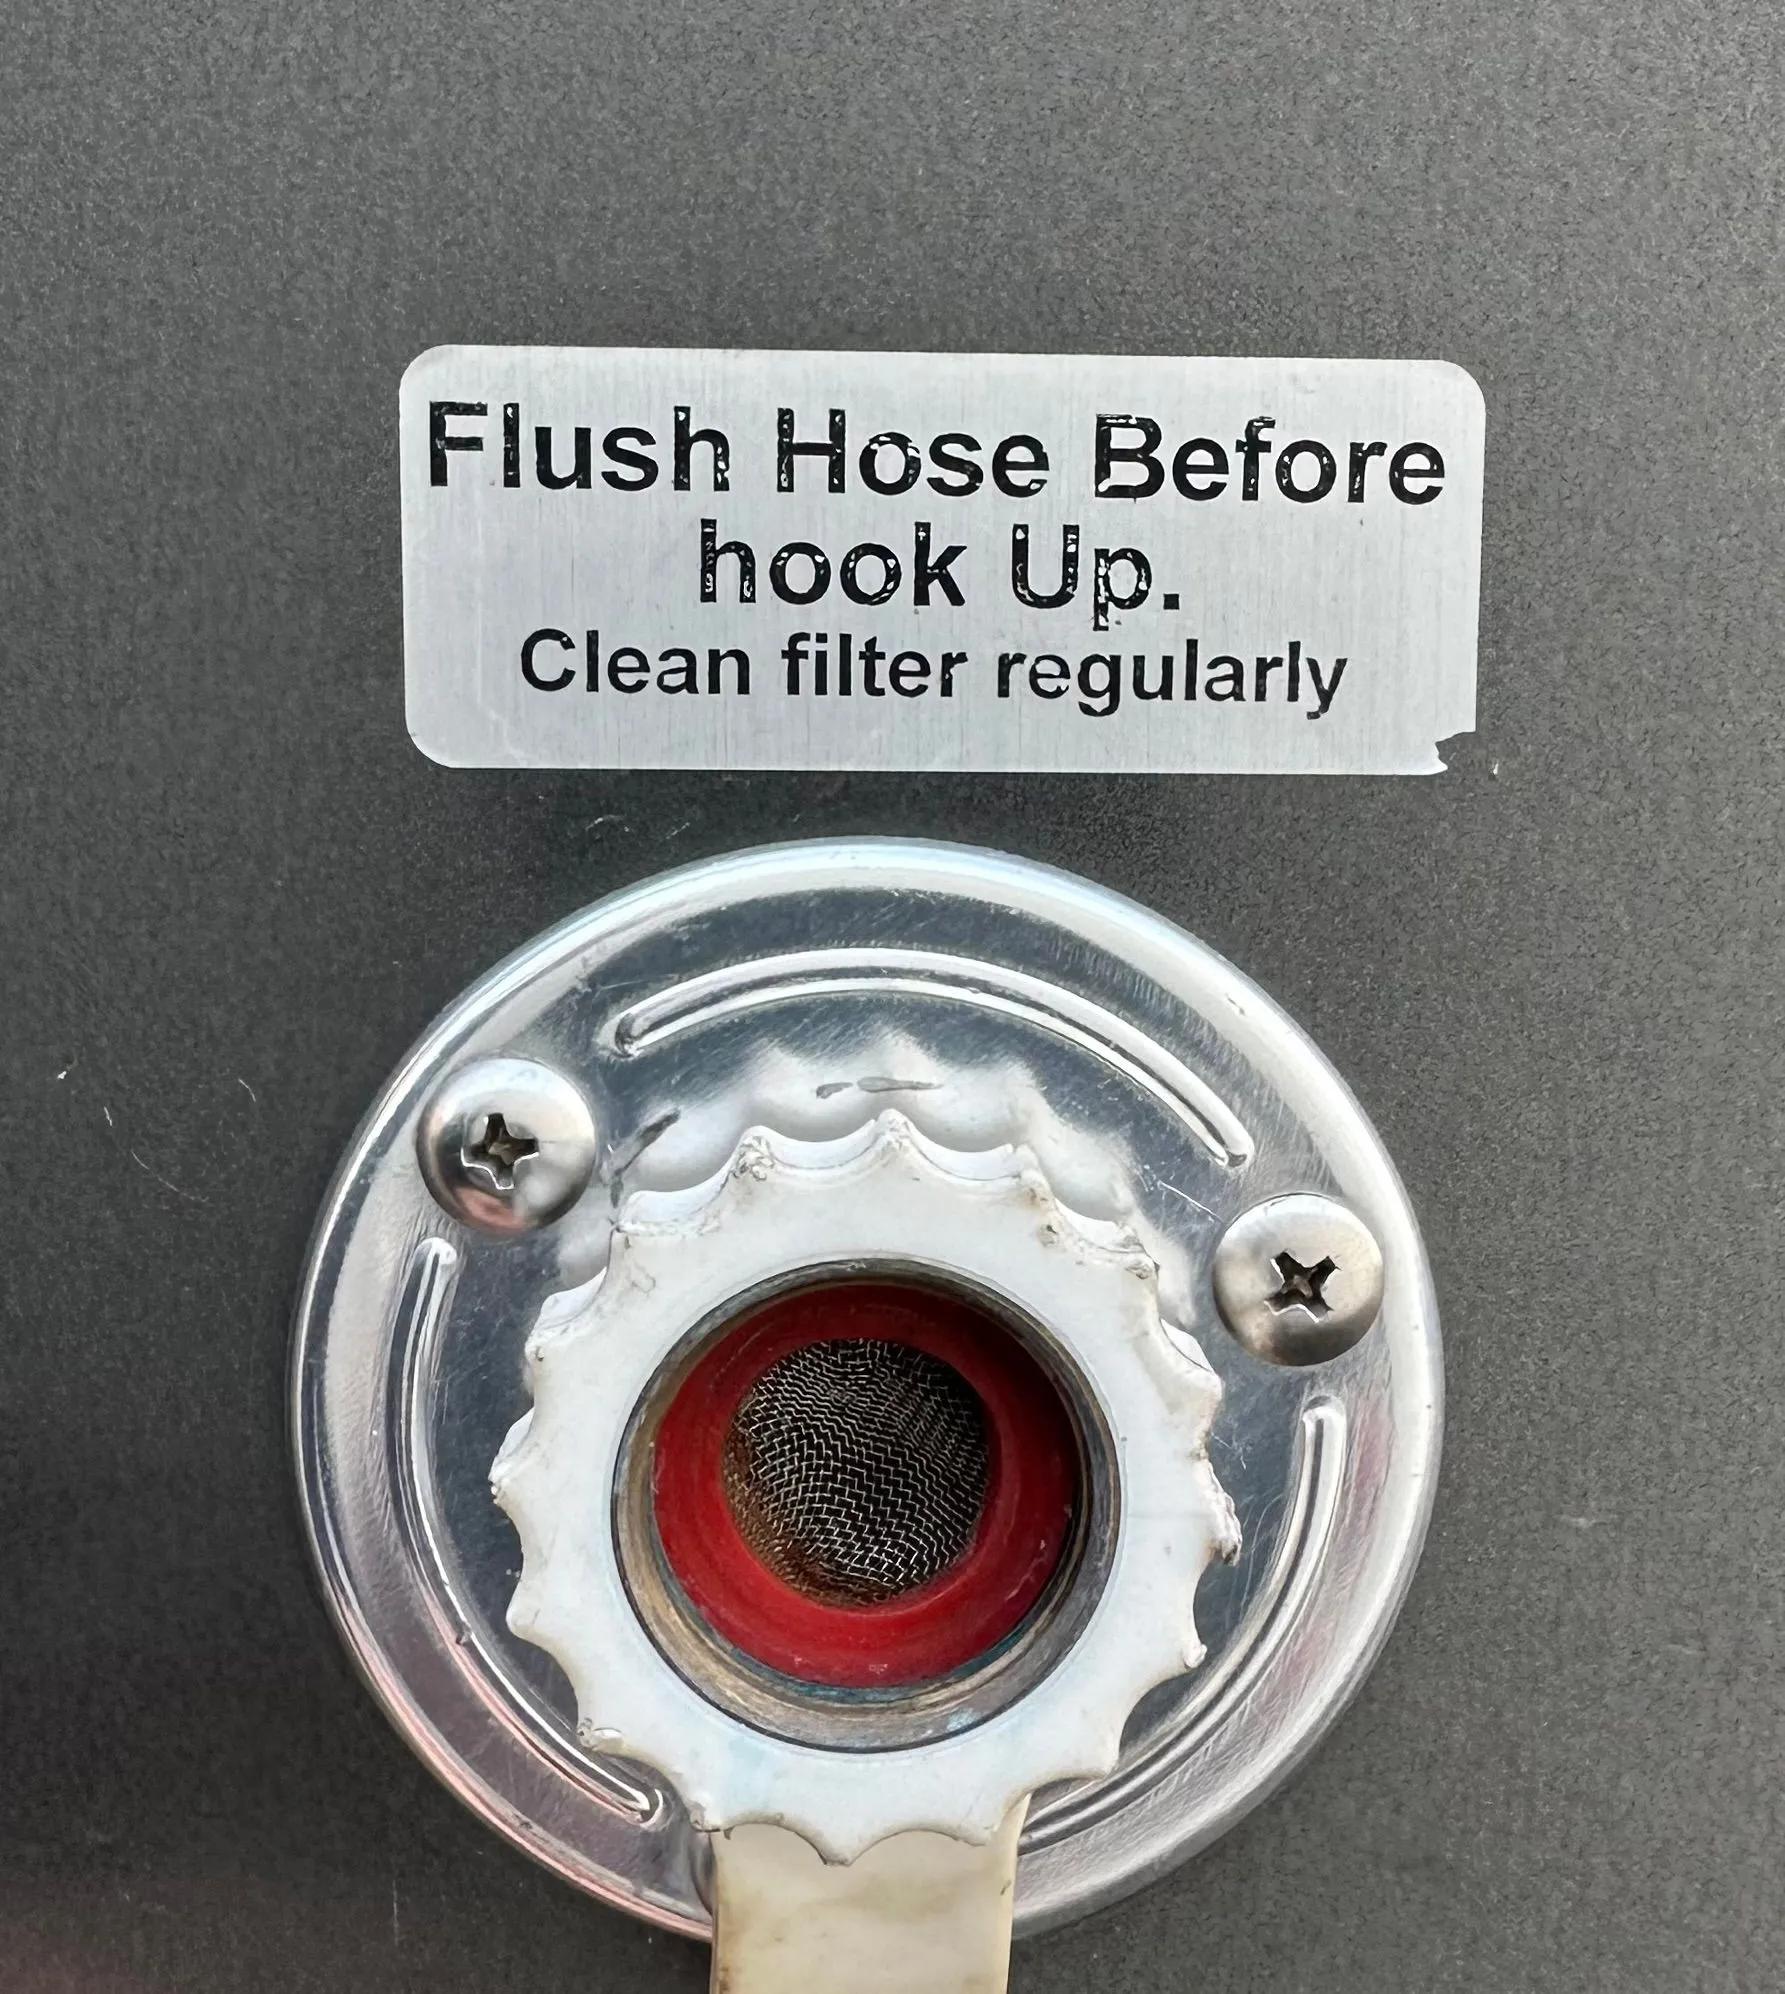 Up close view of flush hose hookup for restroom trailer